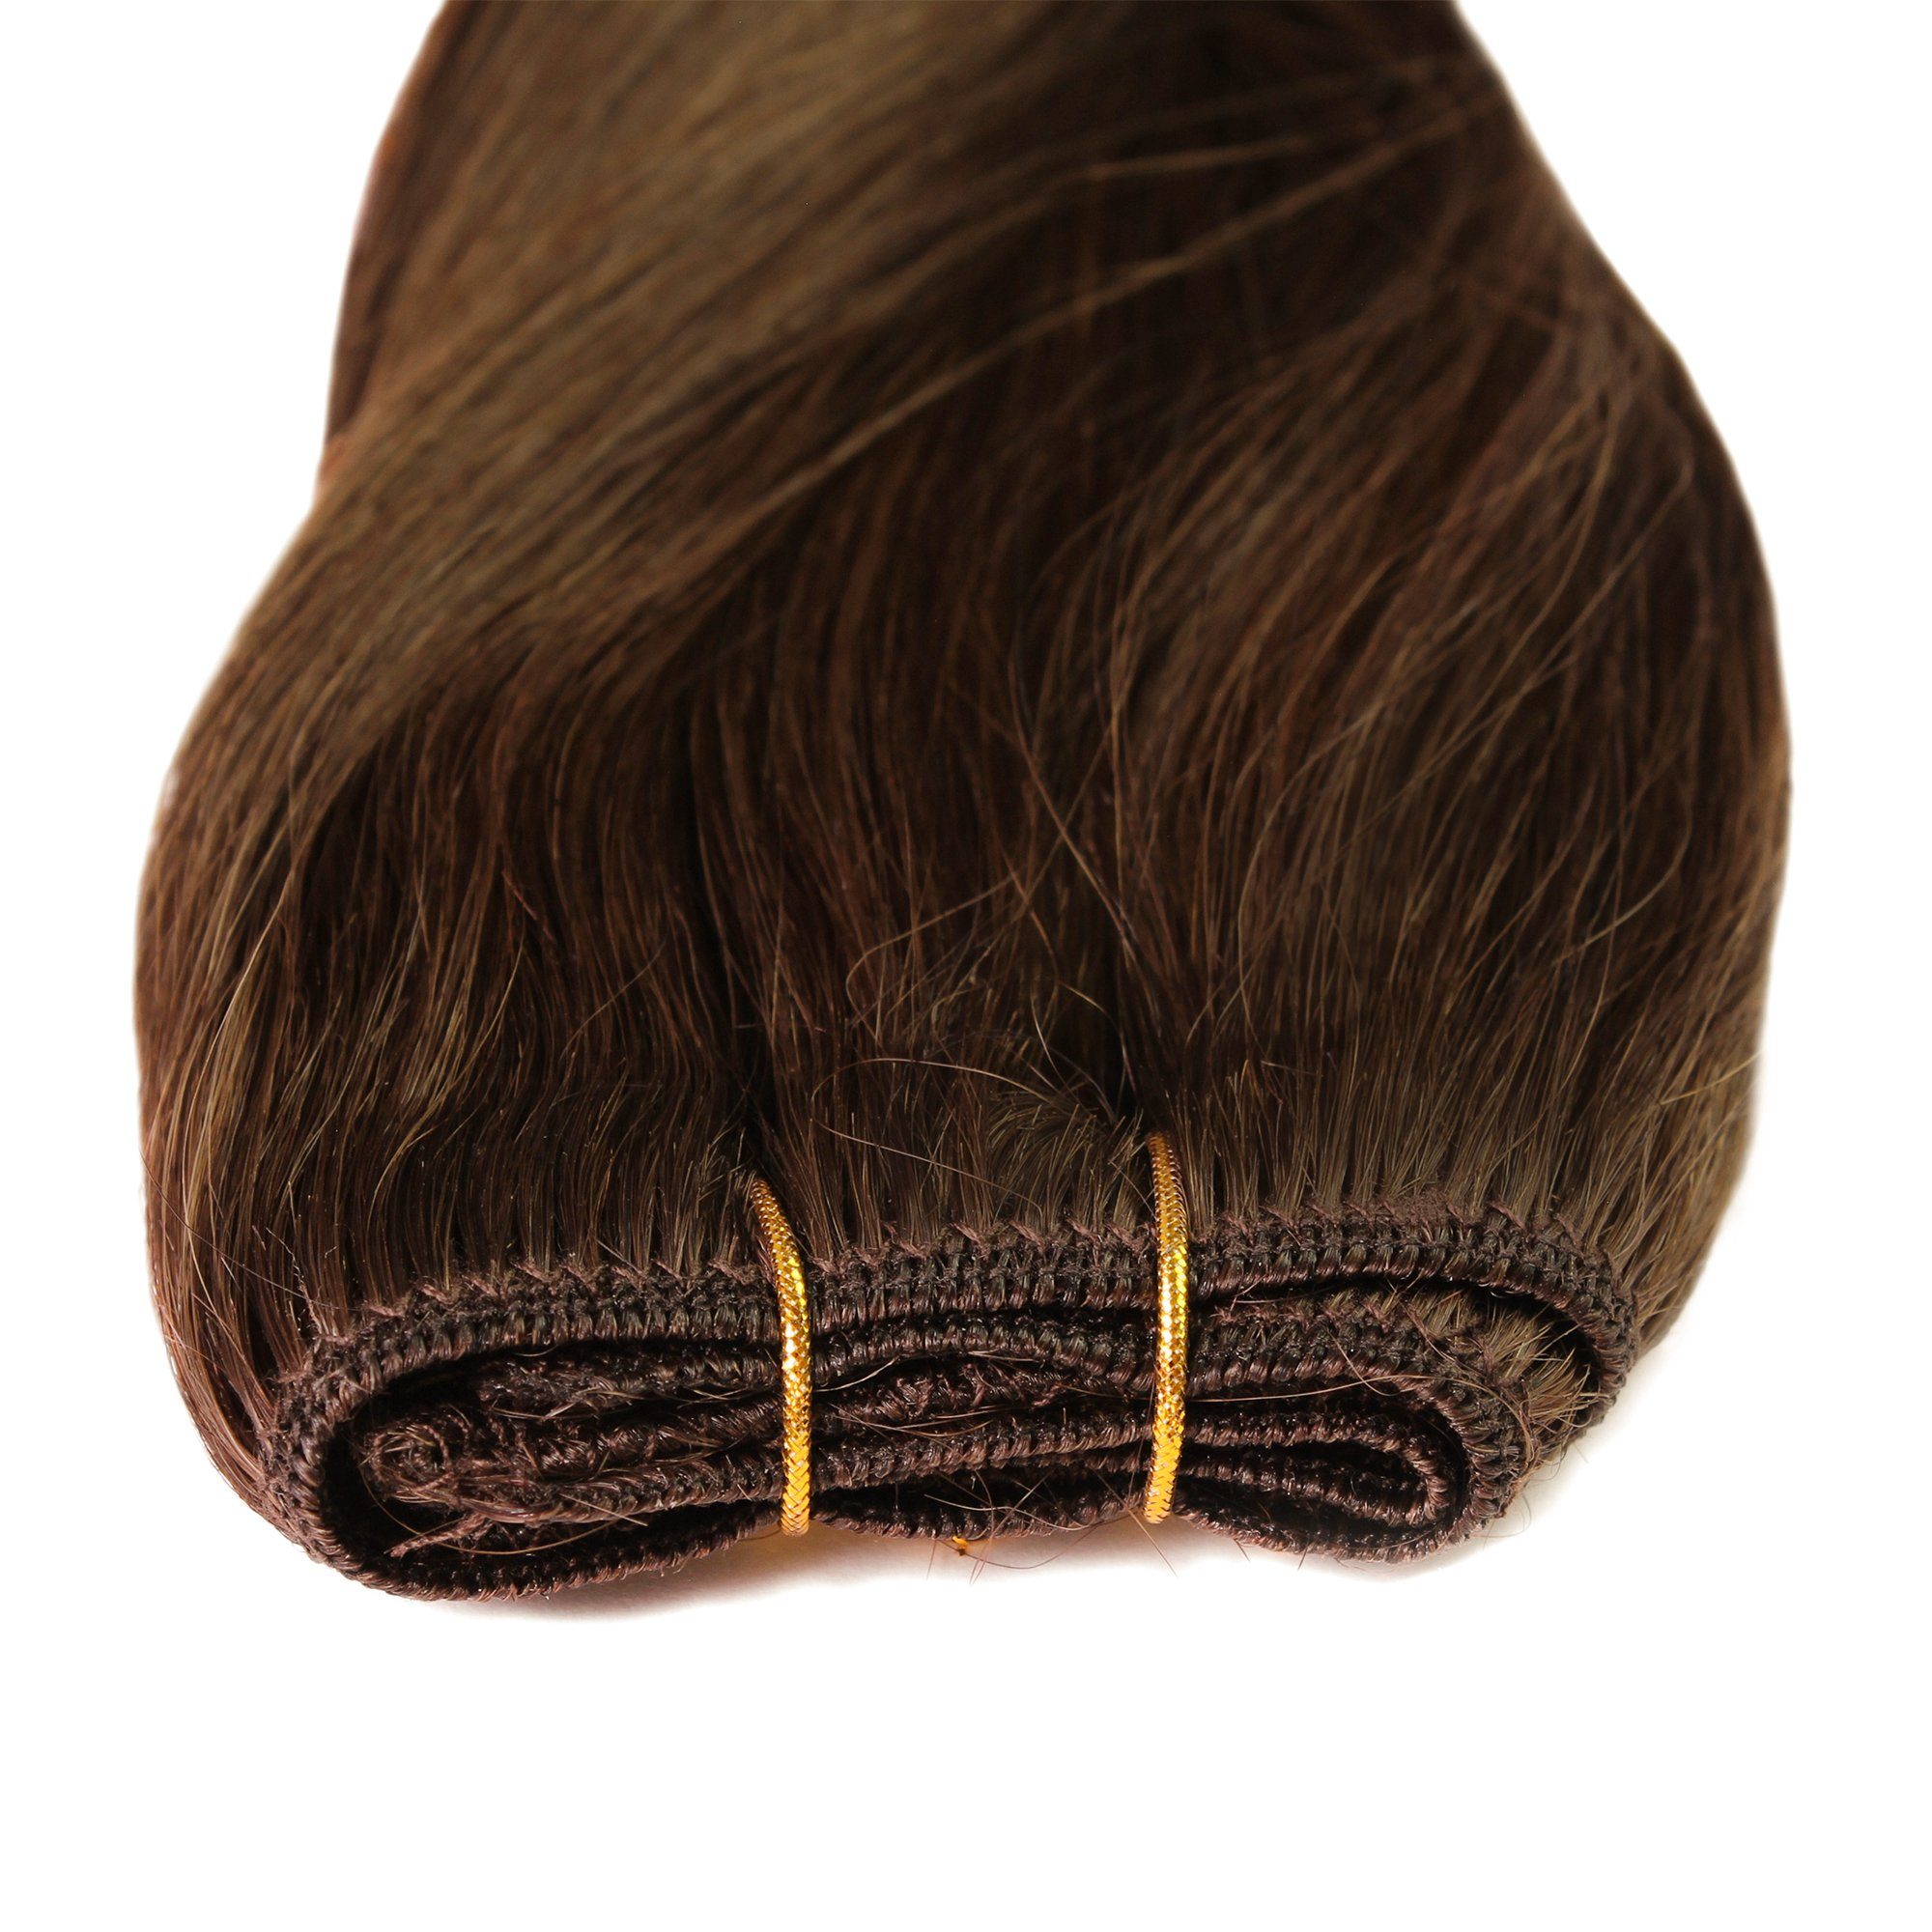 Dunkelblond hair2heart Echthaar-Extension #6/3 Gold 30cm Premium Echthaartresse